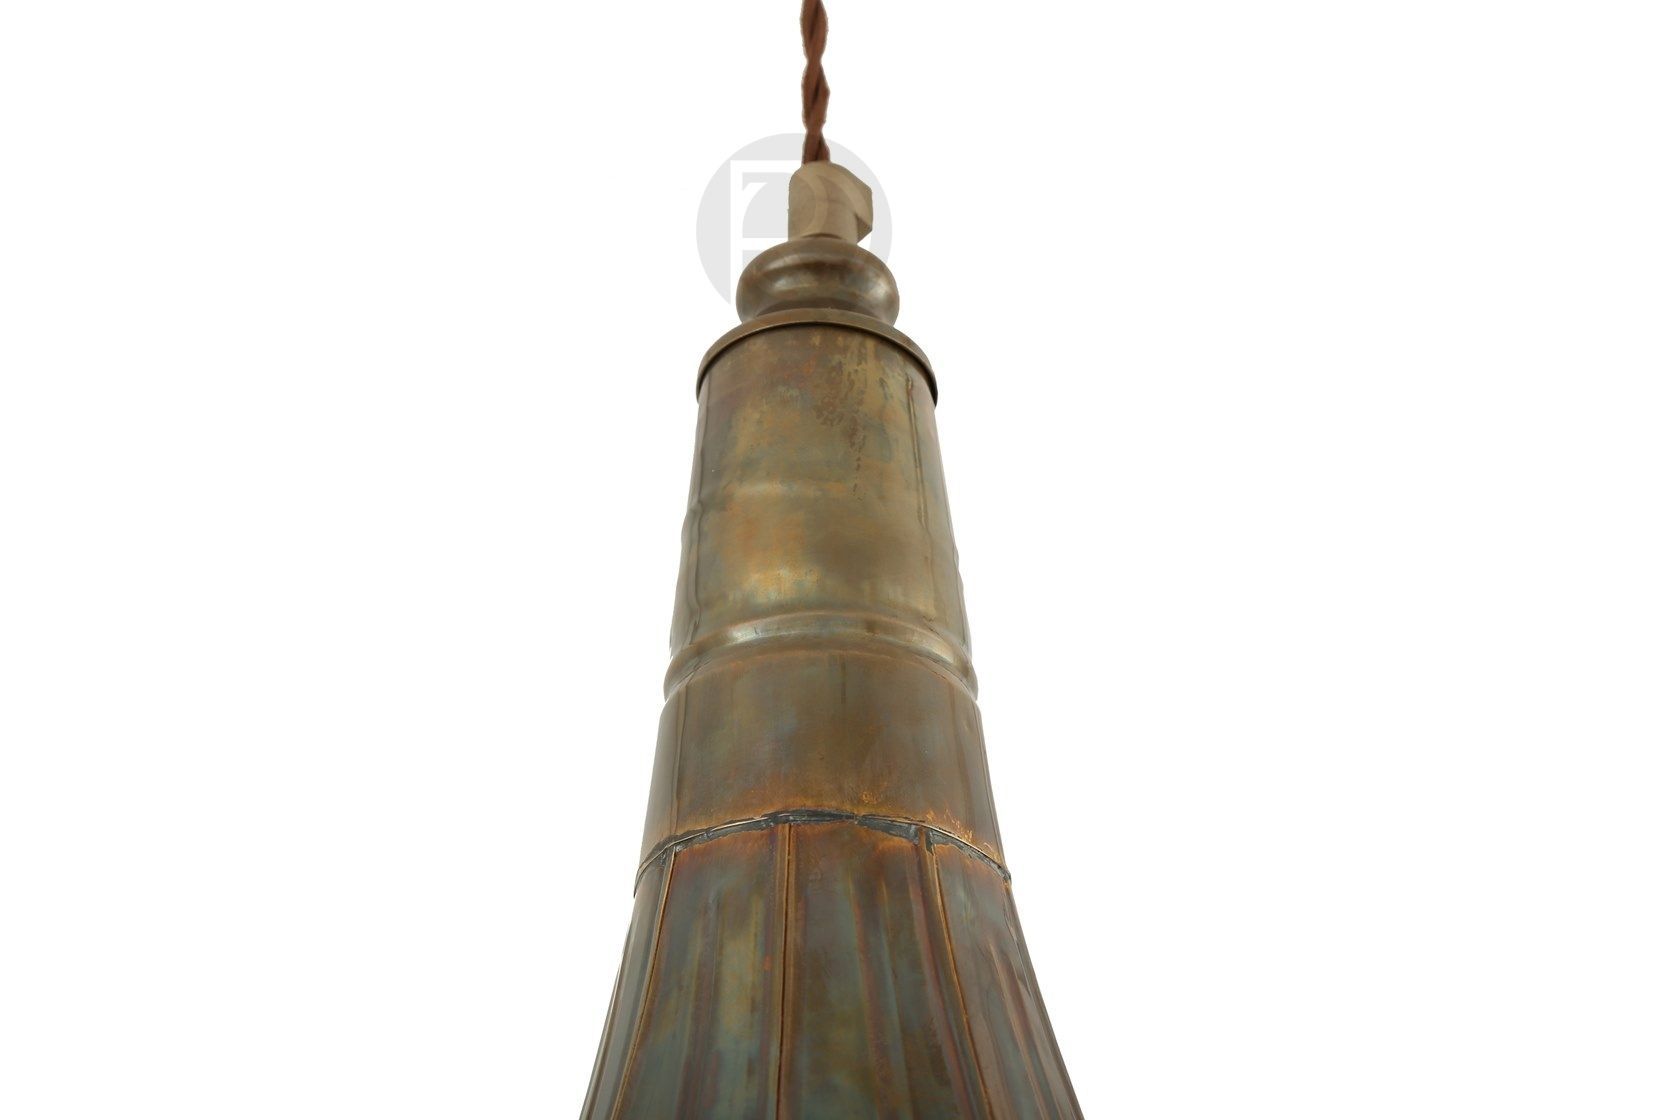 GRAMOPHONE Pendant lamp by Mullan Lighting